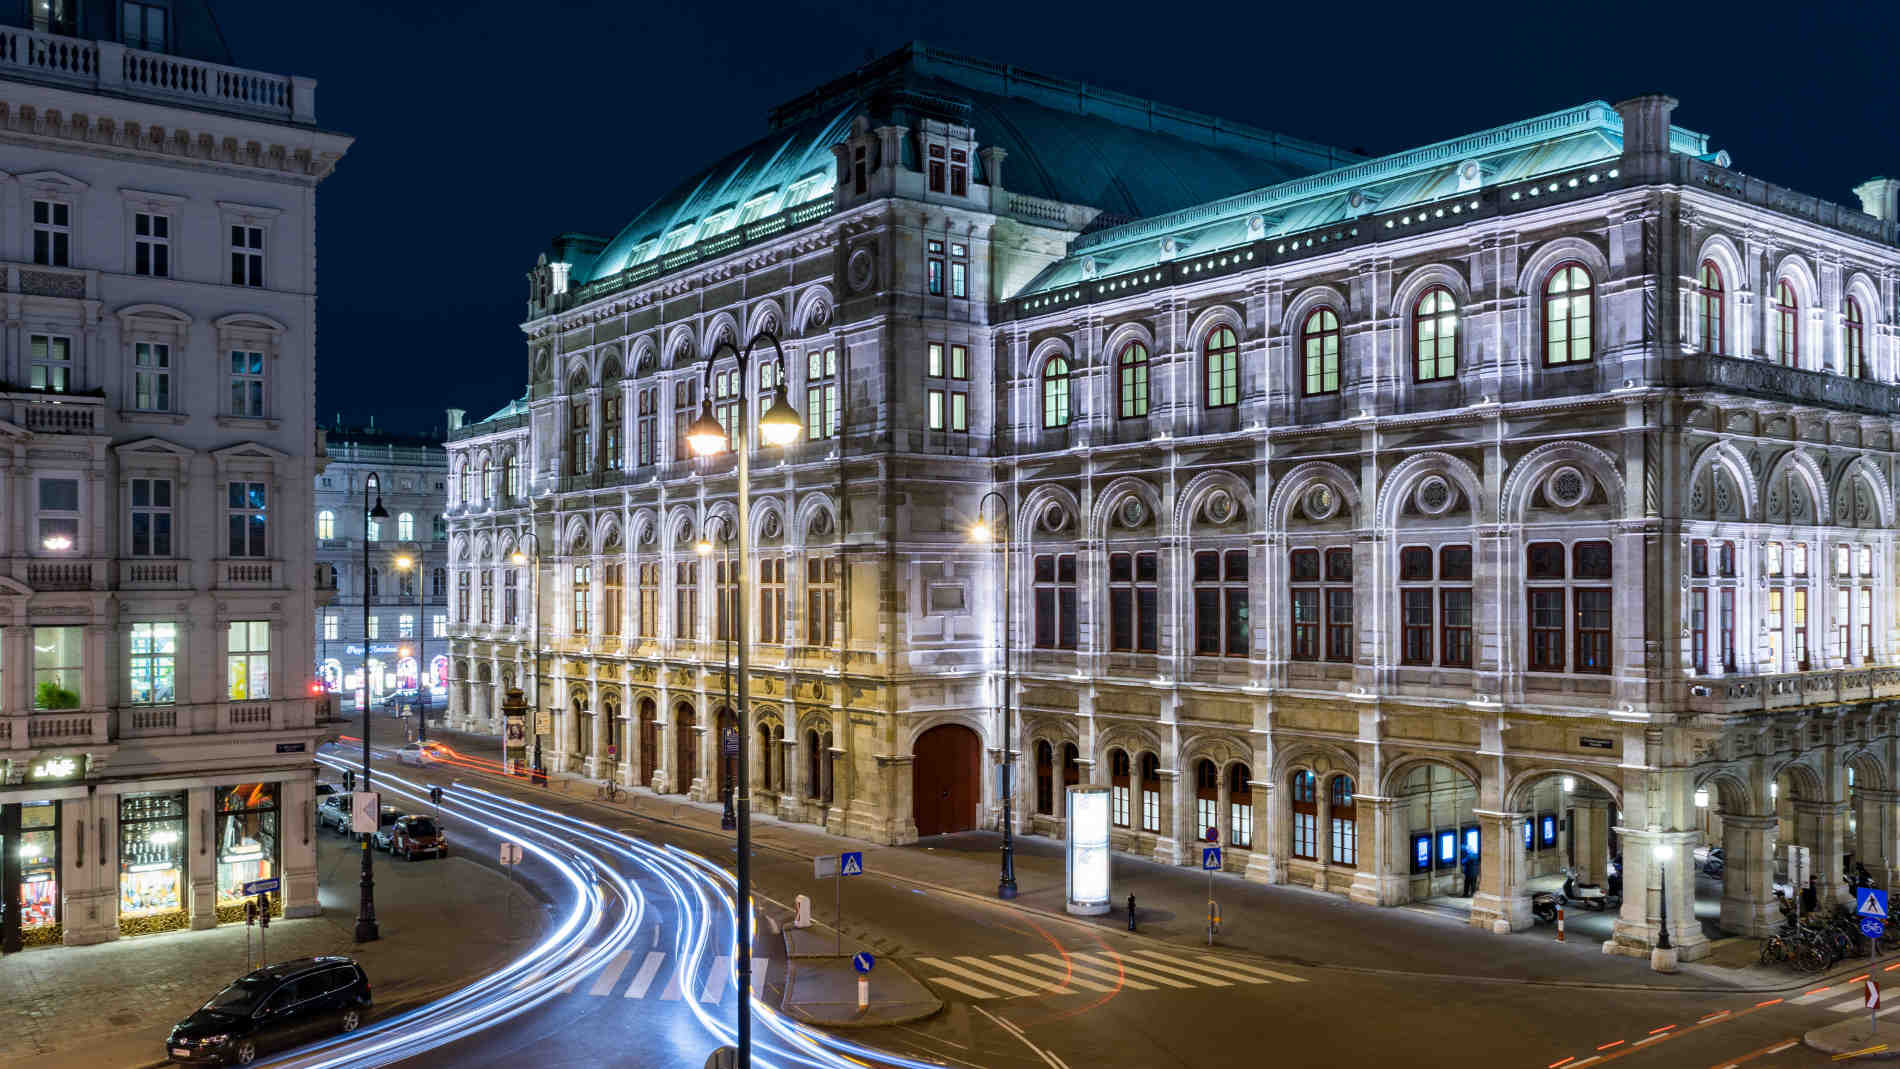 Vienna Austria building at night